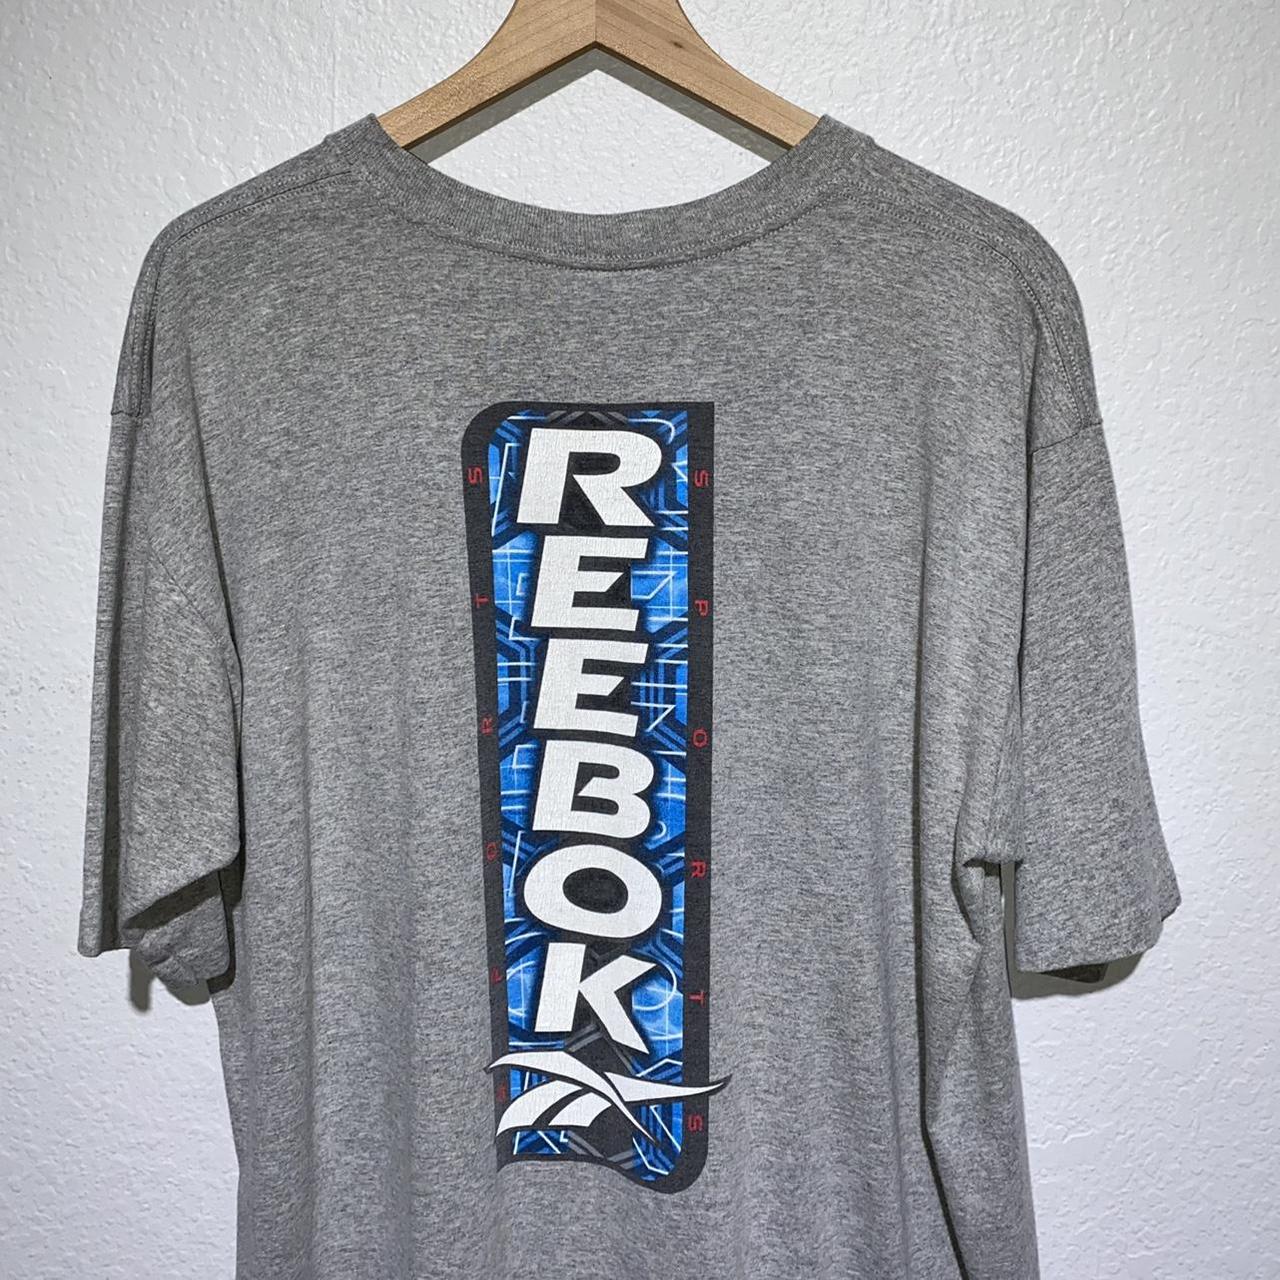 Vintage Early 2000s Reebok Logo Hit Essential Grey T... - Depop